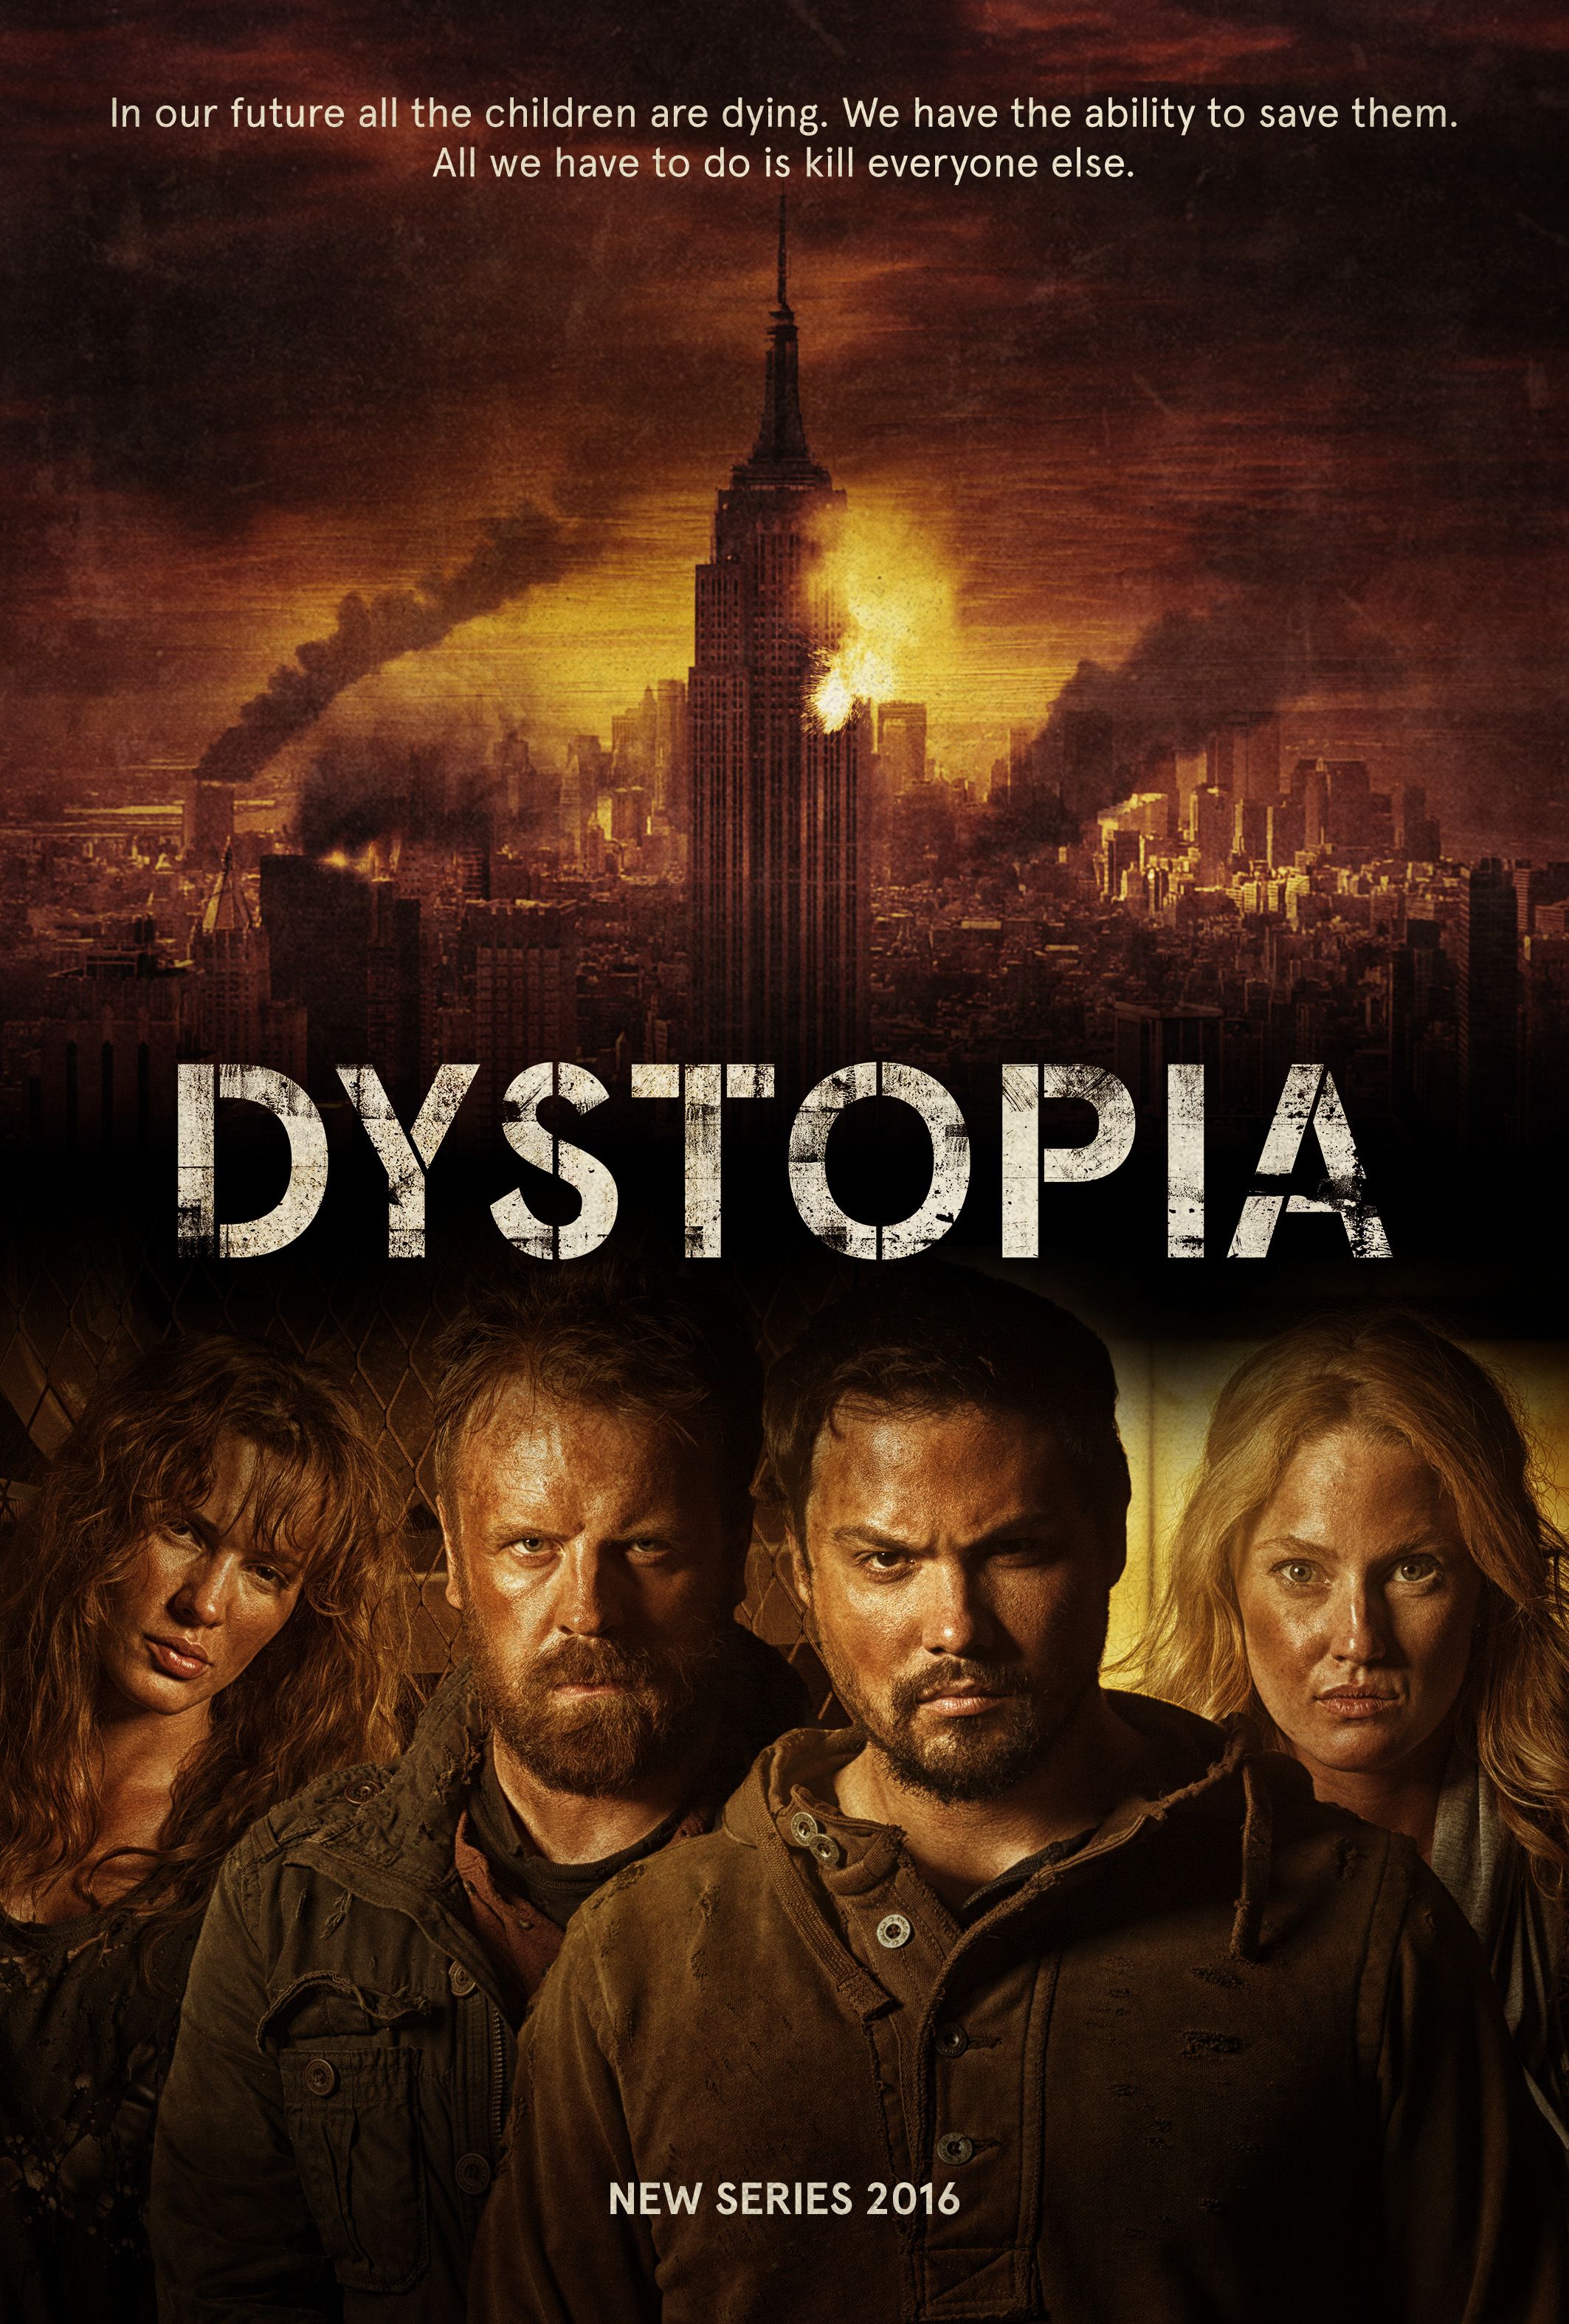 El 1 de octubre XTRM estrena en exclusiva 'Dystopia' 